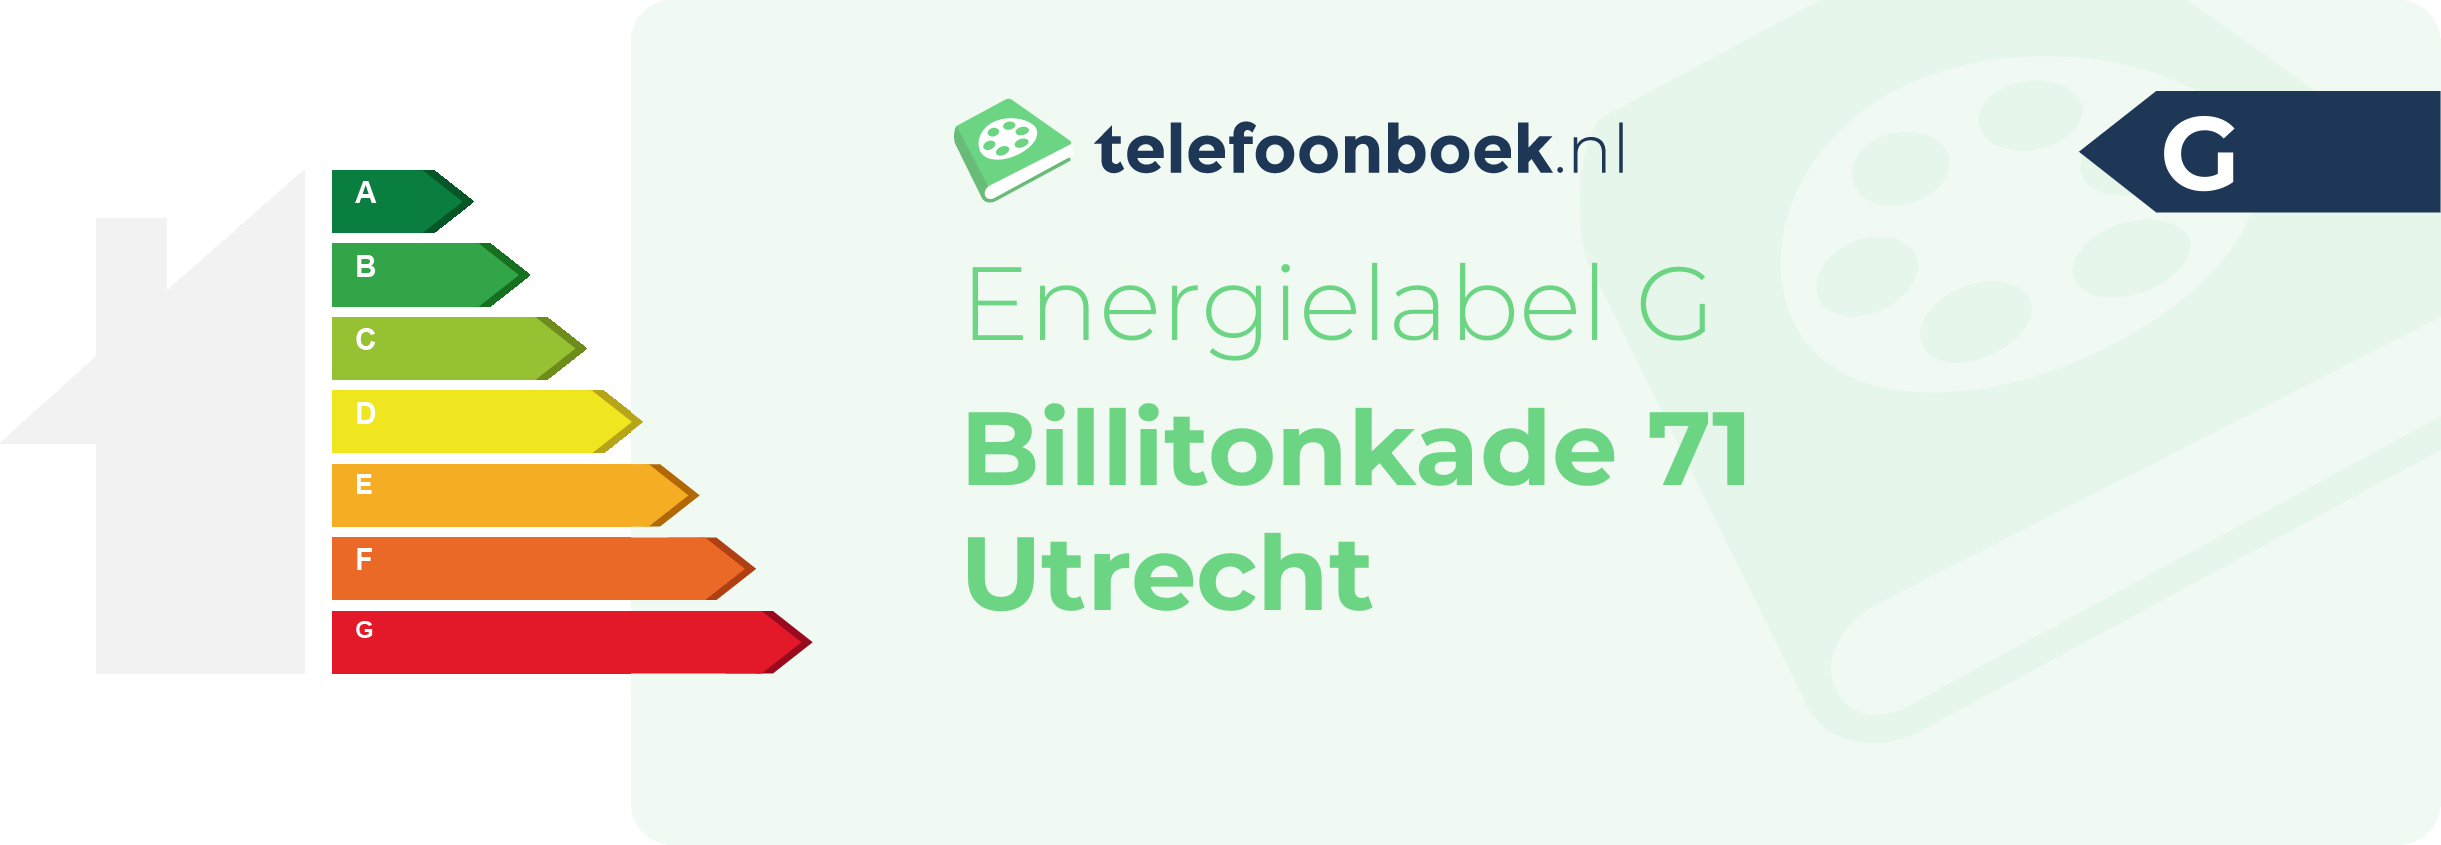 Energielabel Billitonkade 71 Utrecht